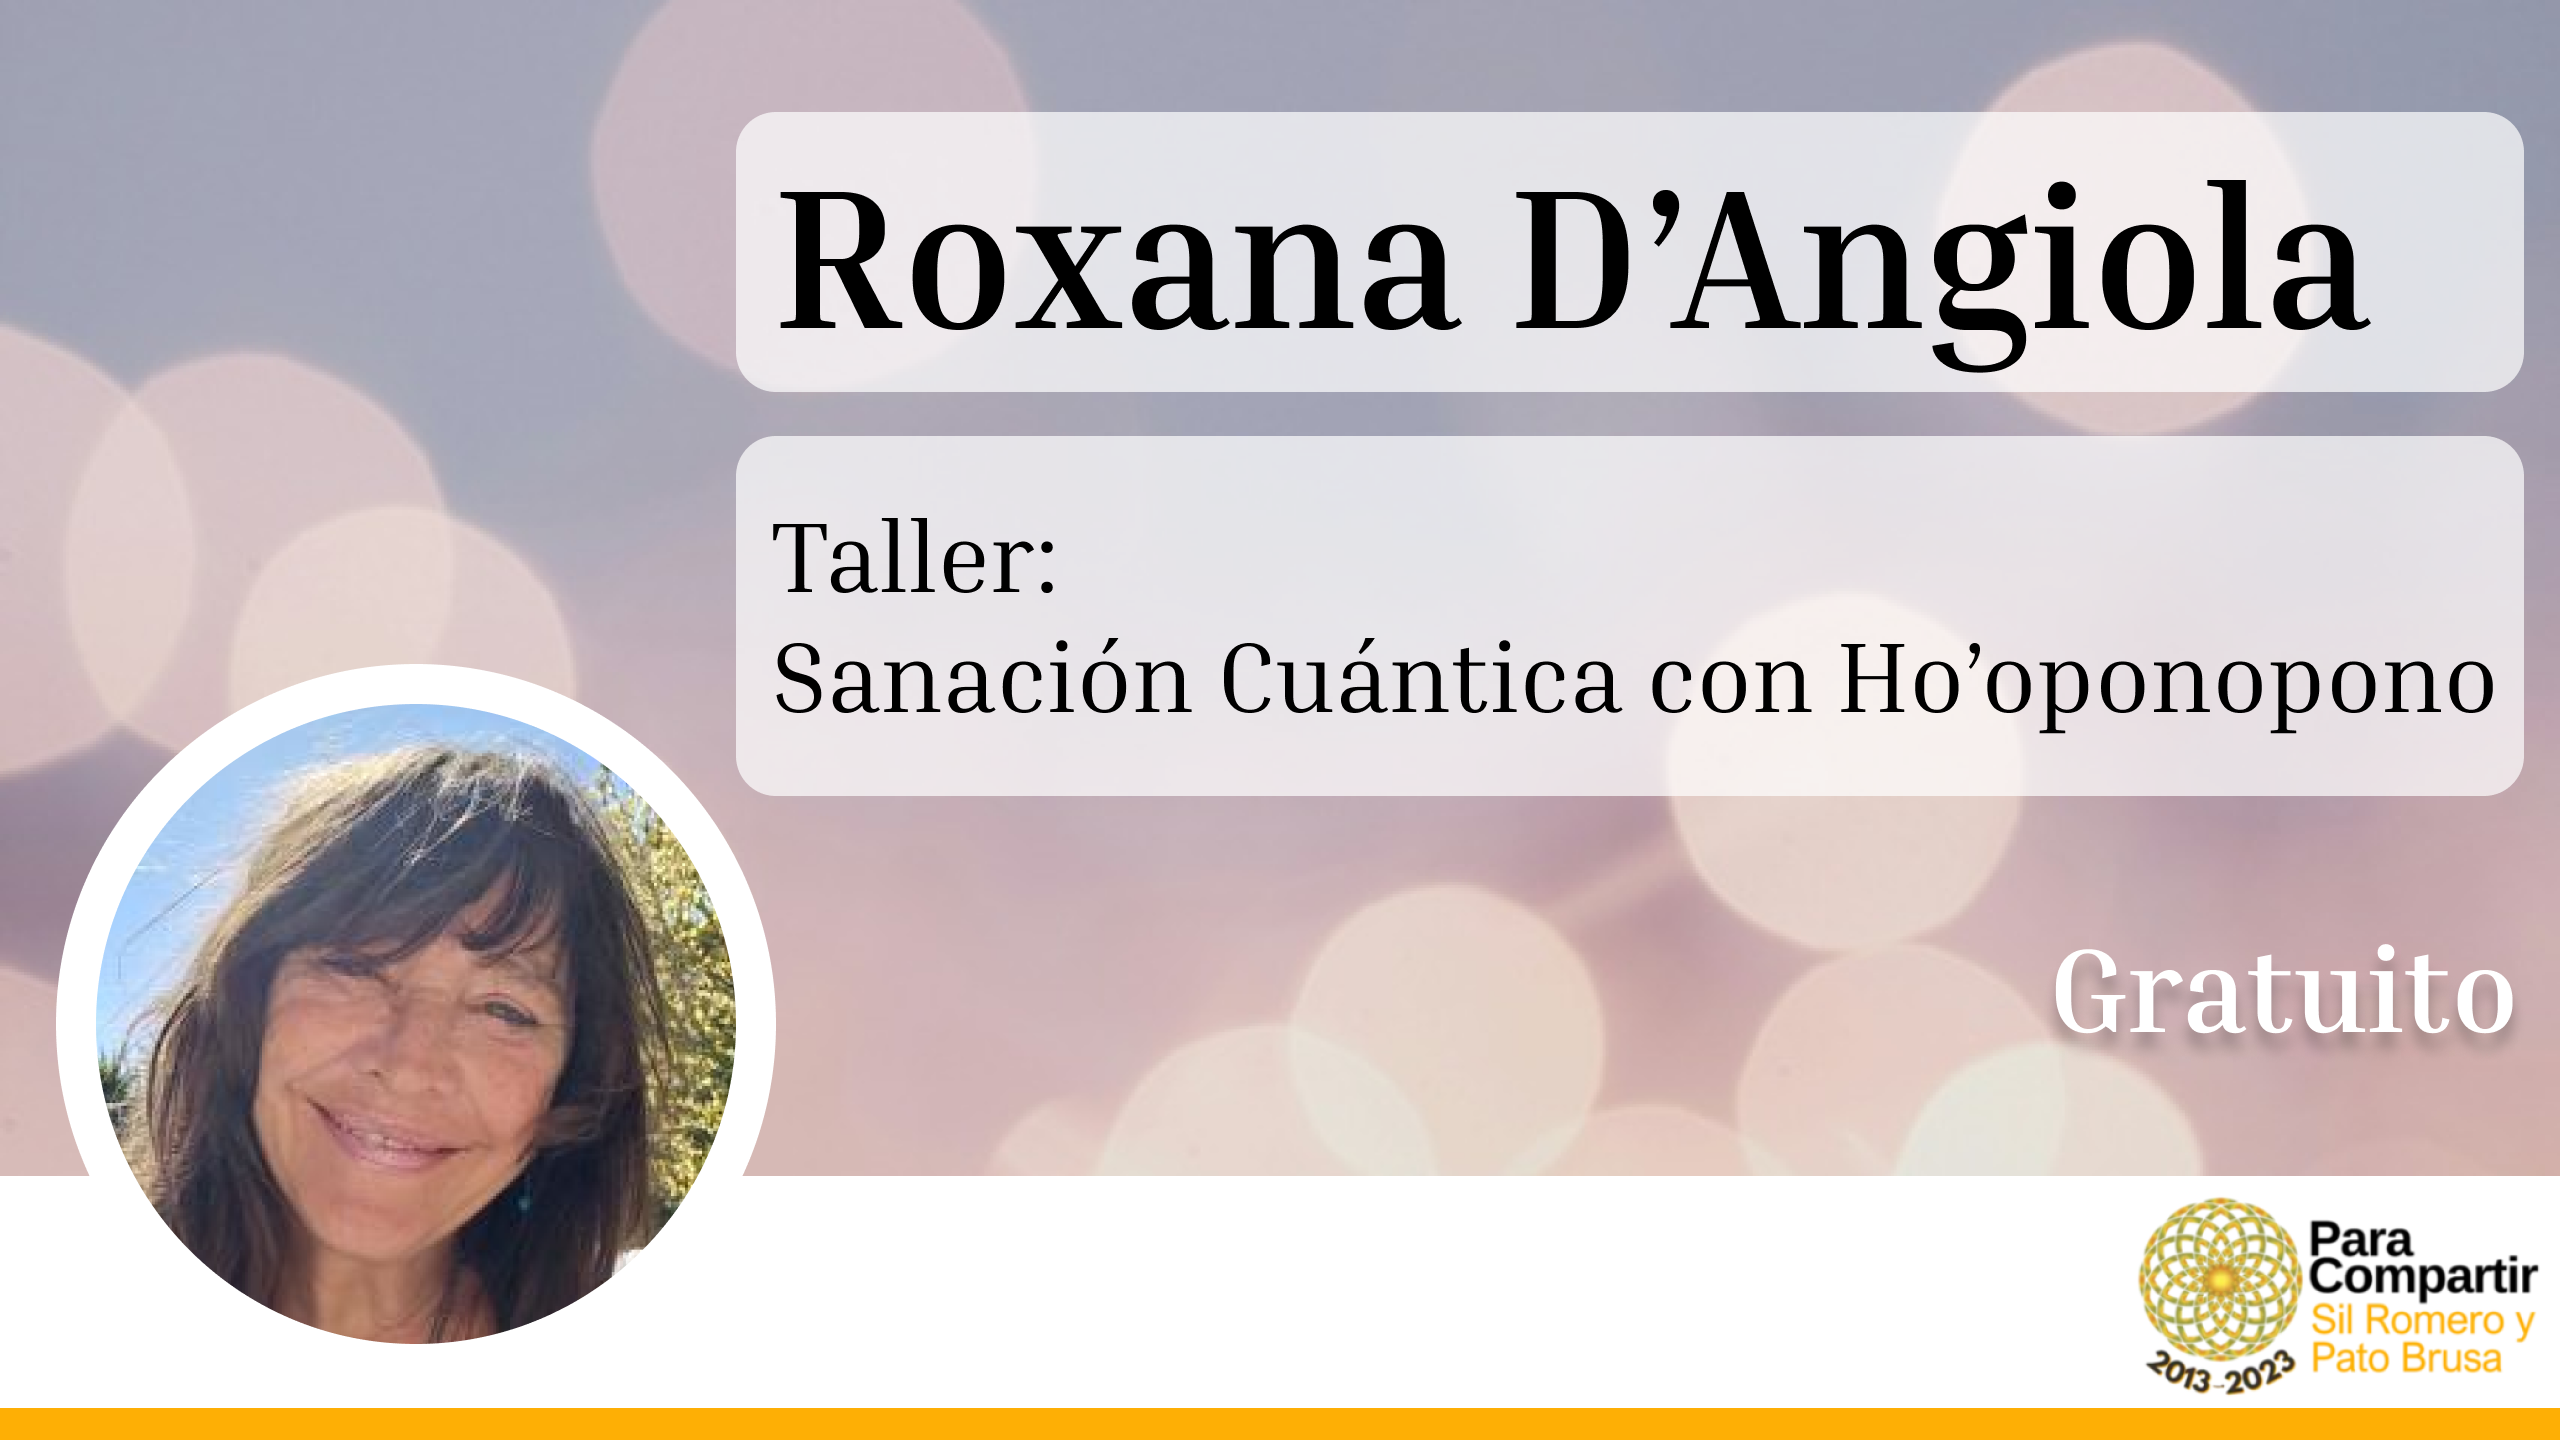 Taller GRATUITO de Sanación Cuántica con Ho’oponopono con Roxana D’Angiola